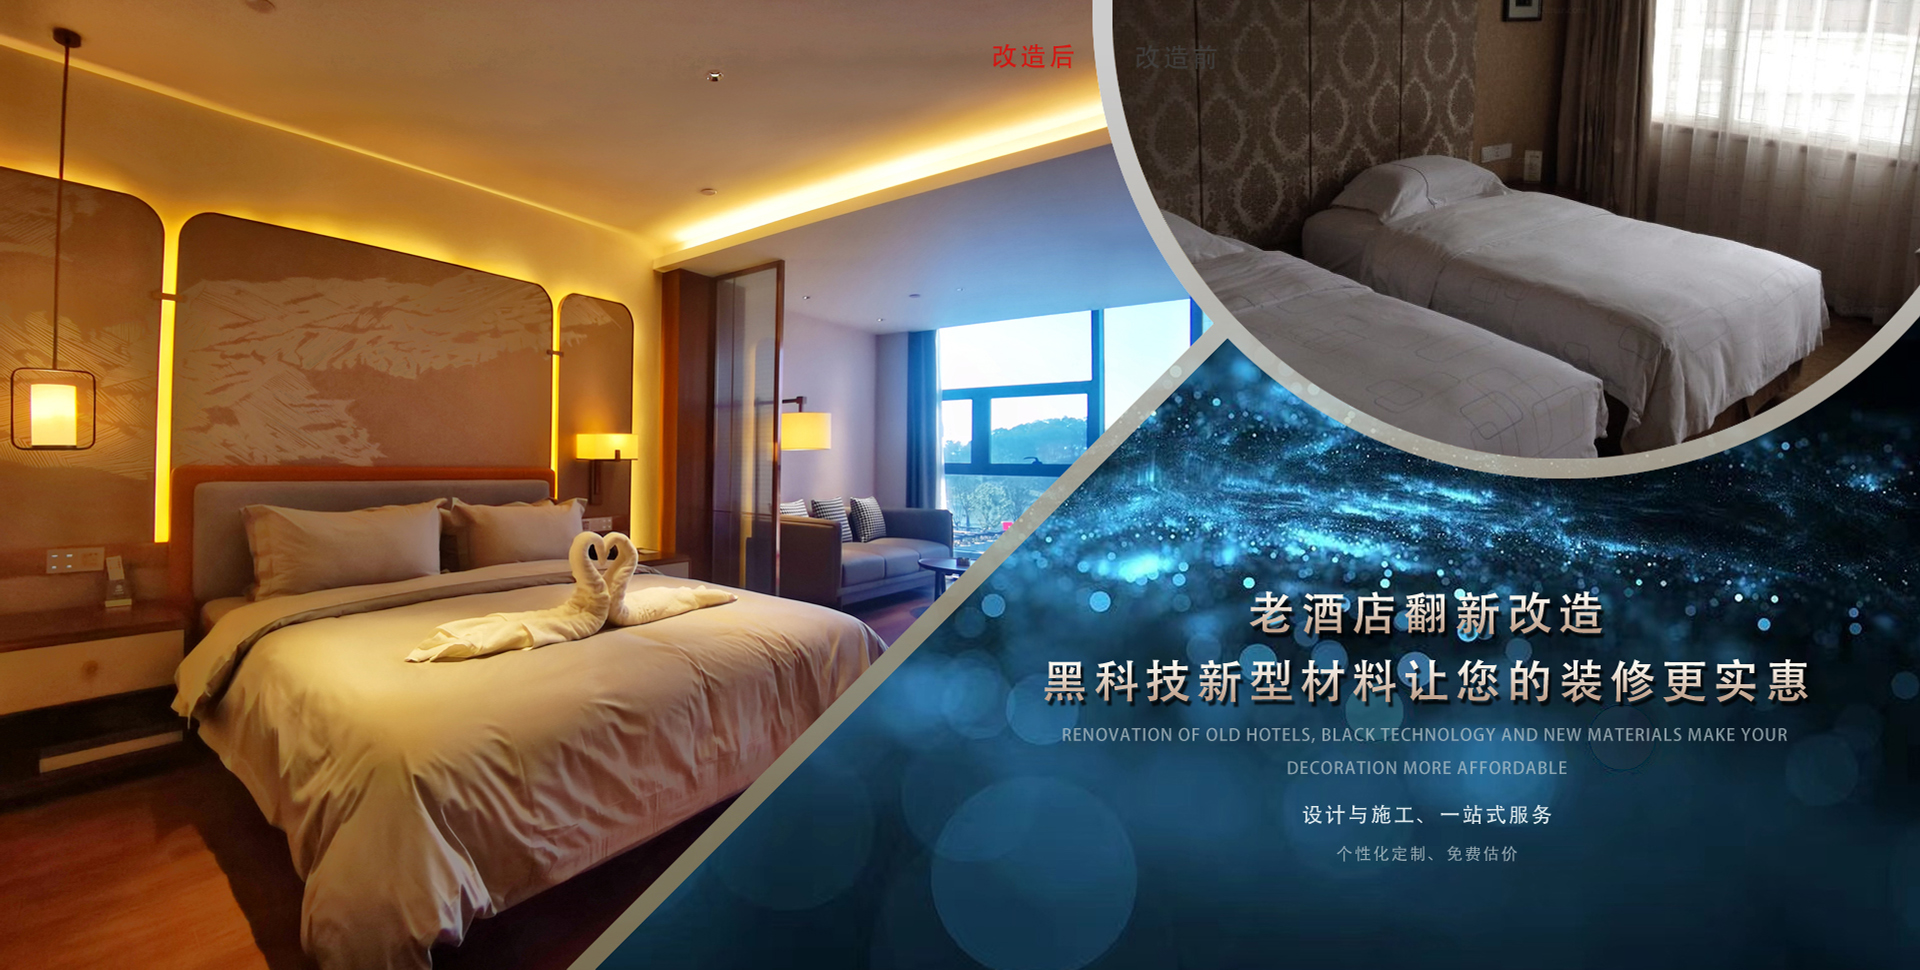 上海酒店装修设计_上海酒店装修设计公司_上海酒店装修设计公司哪家好